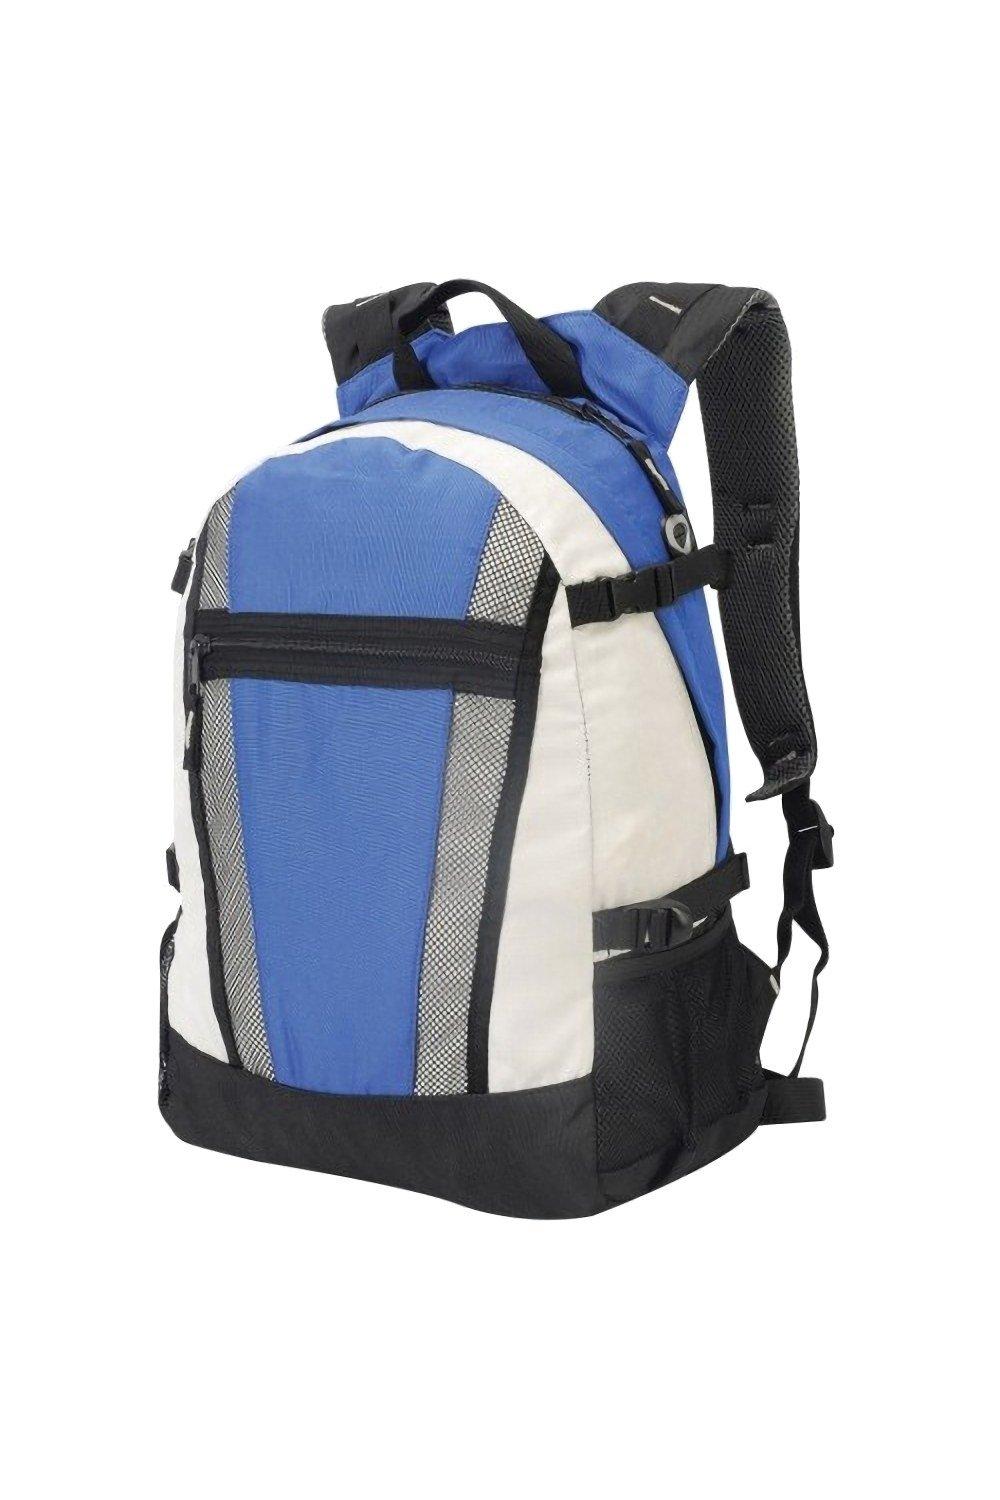 Спортивный рюкзак Indiana (20 литров) Shugon, синий рюкзак gorjuss одно отделение